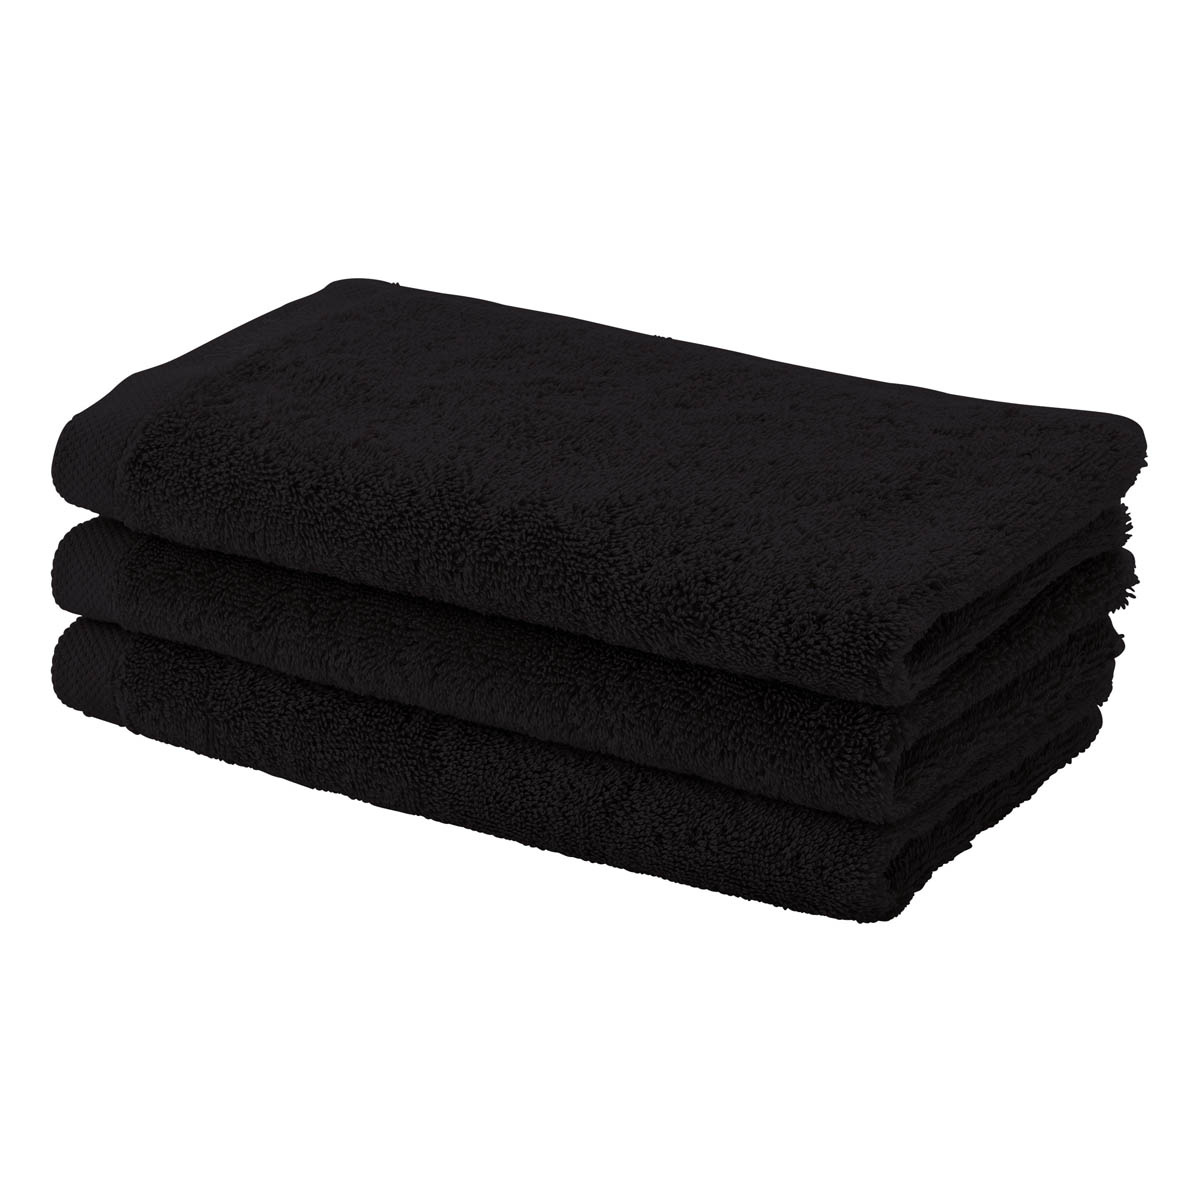 overdrijving Interpretatief maak een foto London handdoek Zwart - Badmatten.nl